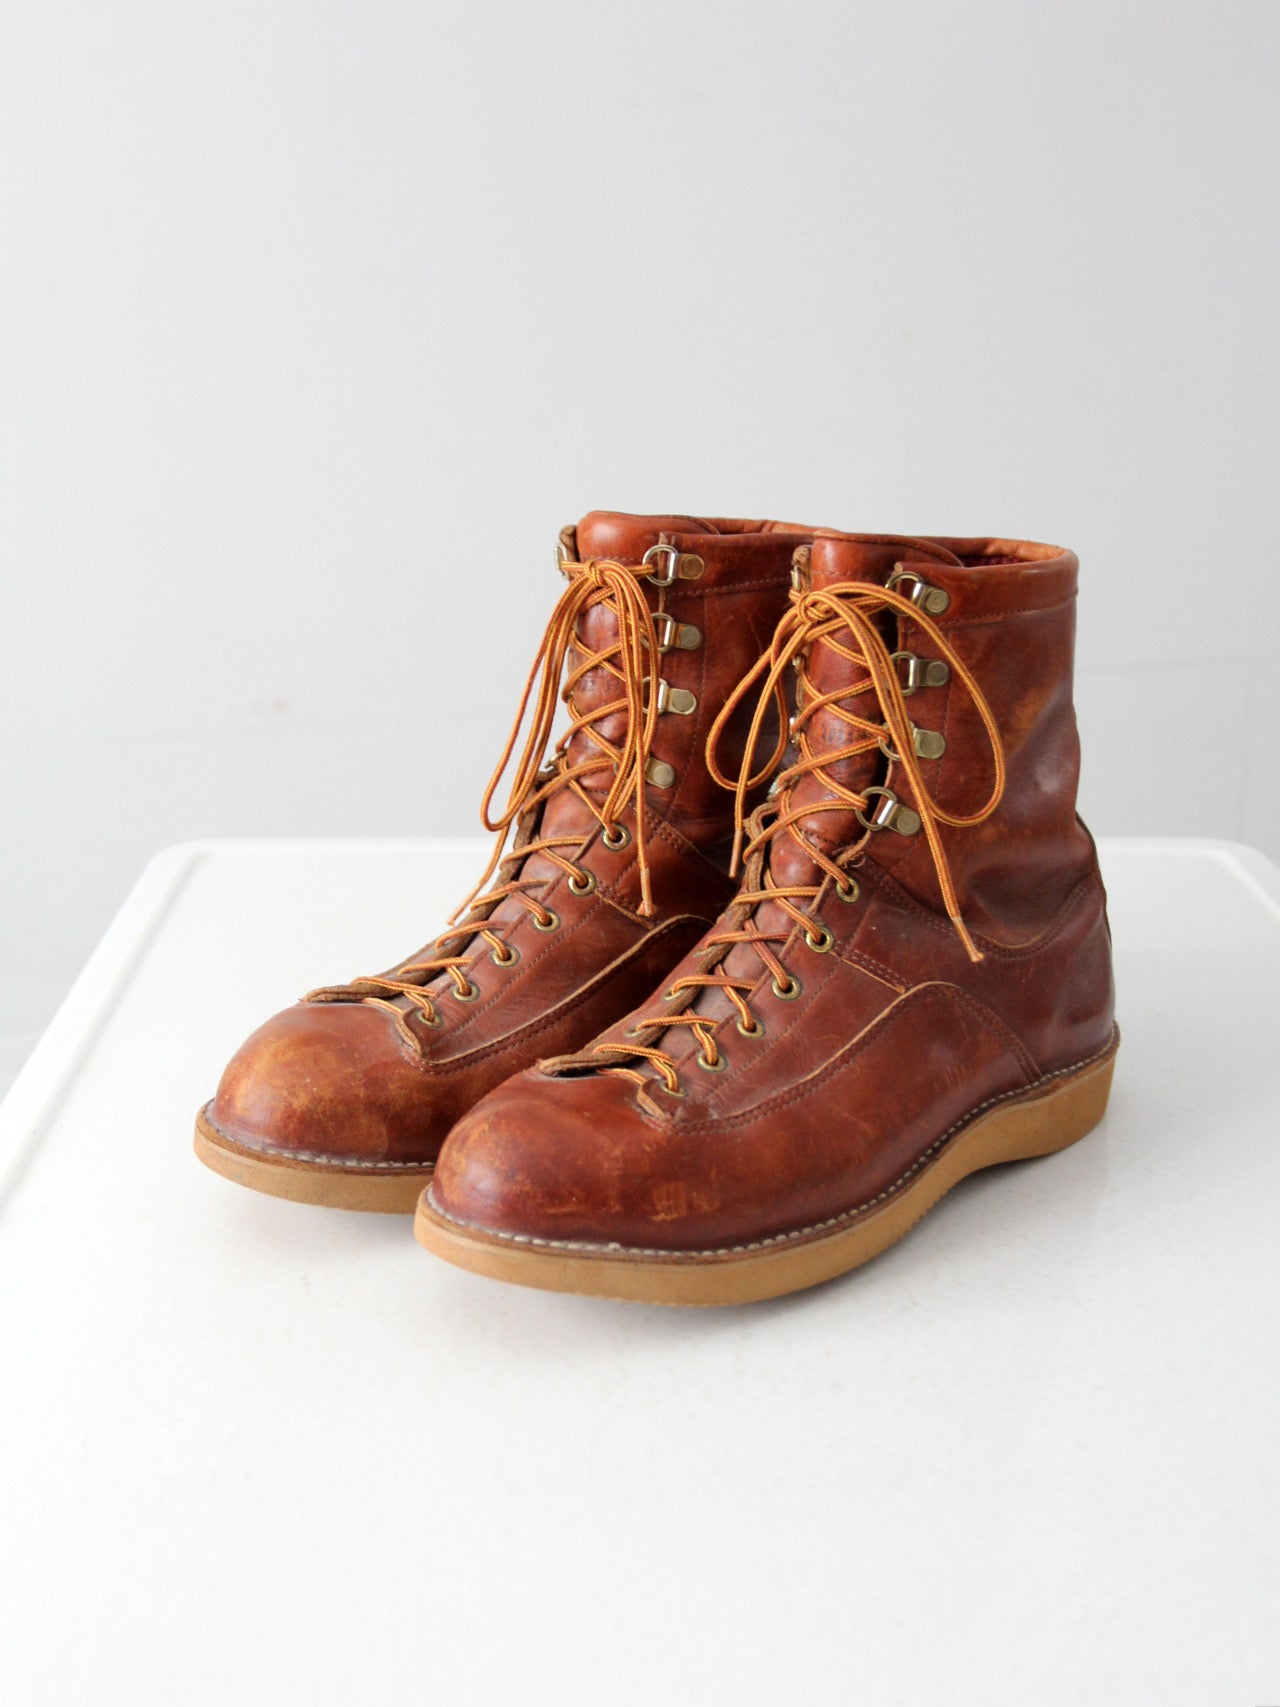 vintage Danner men's work boots